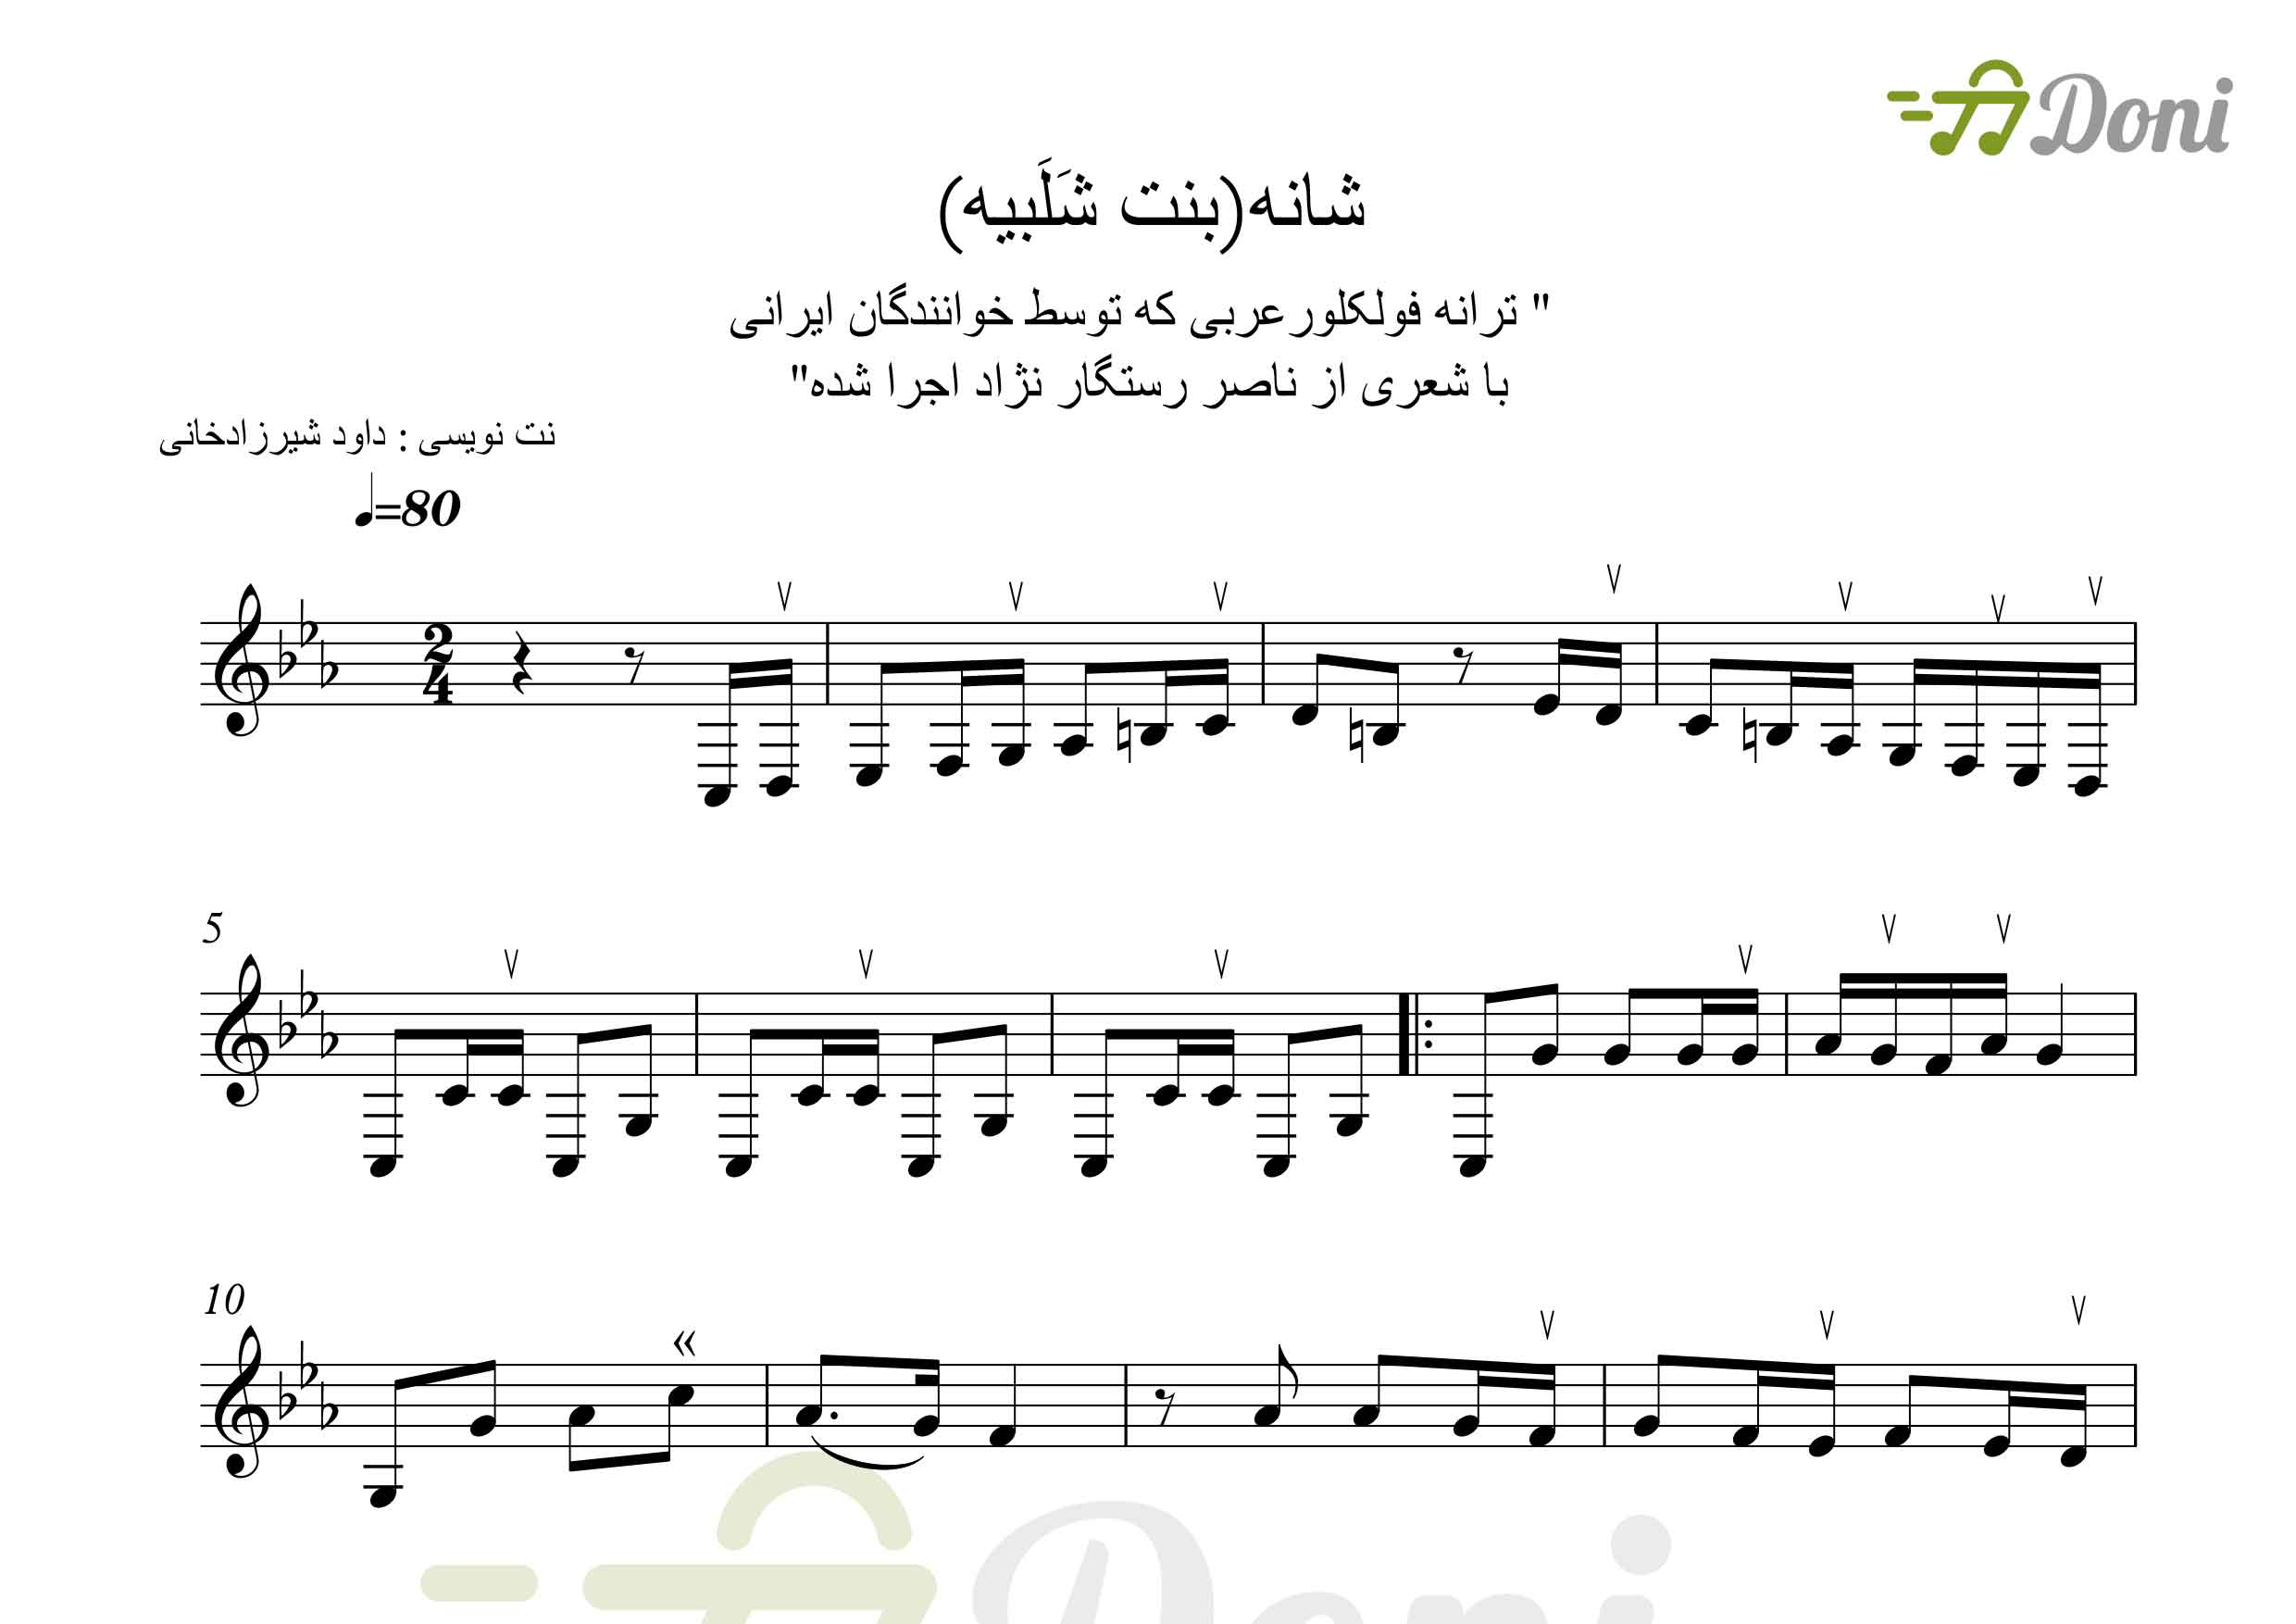 نت سه تار شانه بنت شلبیه  محلی عربی  قابل اجرا با تار و دیگر سازها